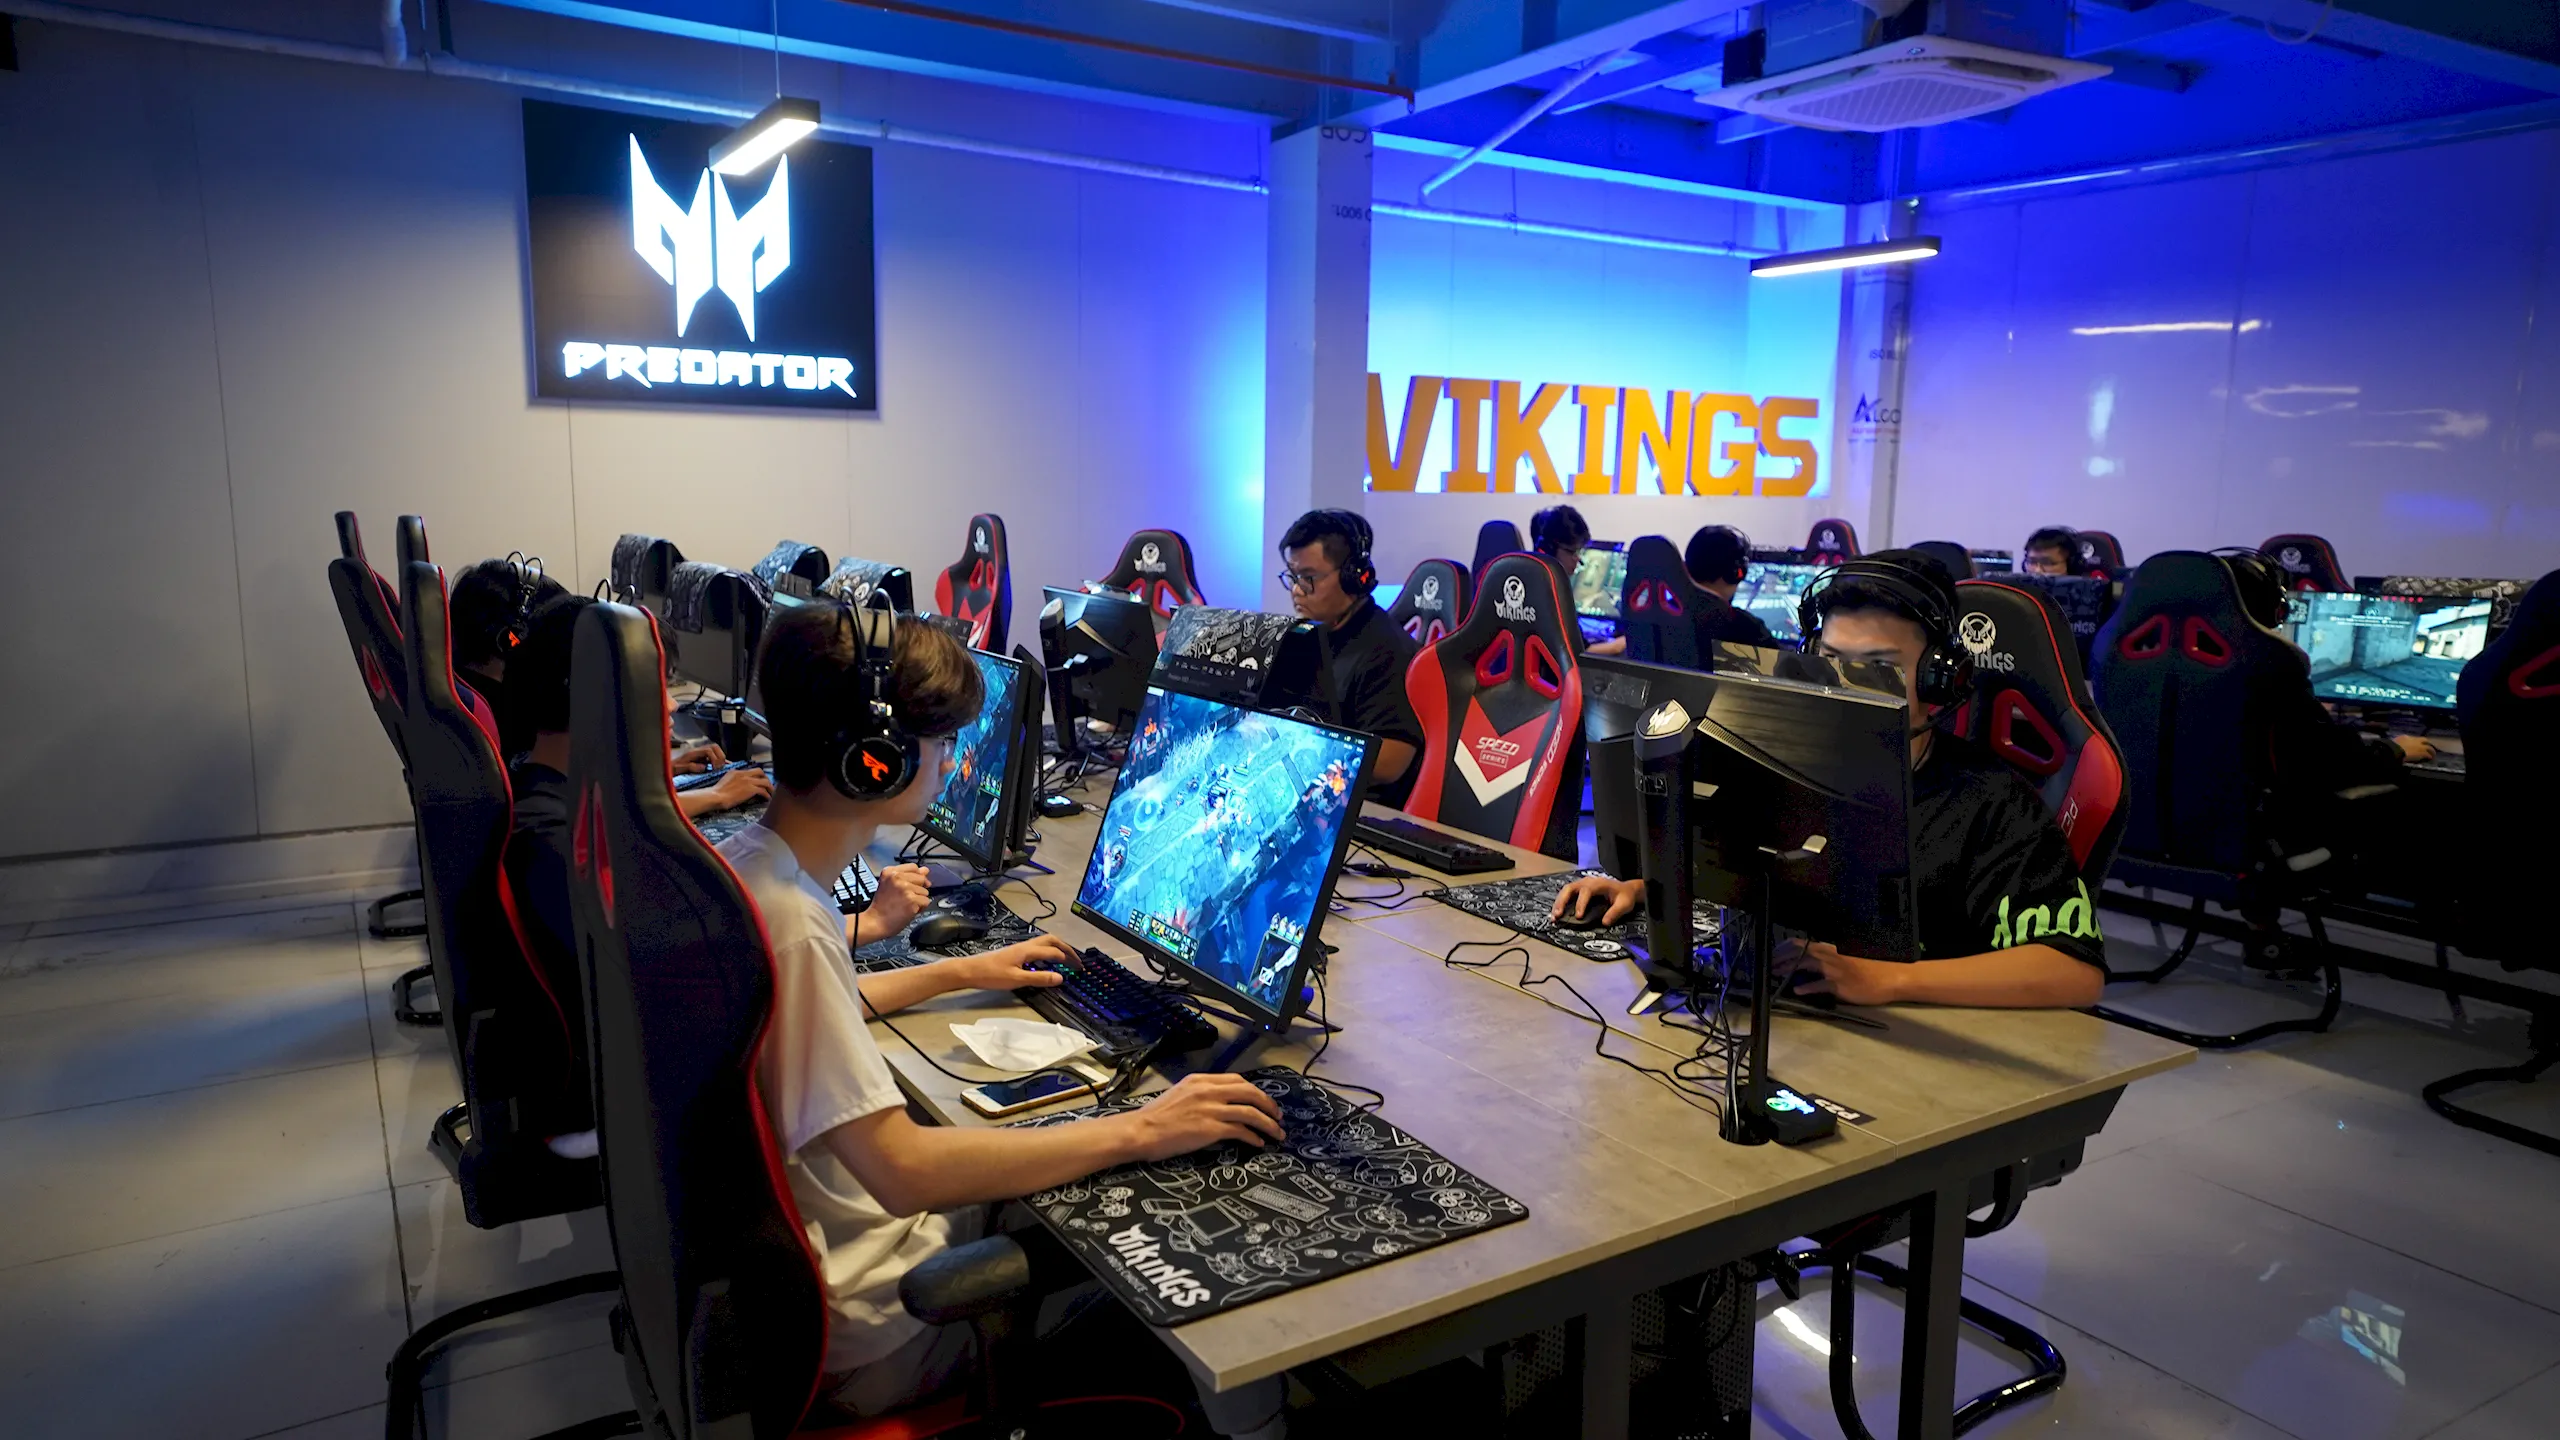 Vikings Esports Arena khai trương cơ sở mới tại Giải Phóng – Hà Nội với khu vực tổ chức sự kiện hoành tráng